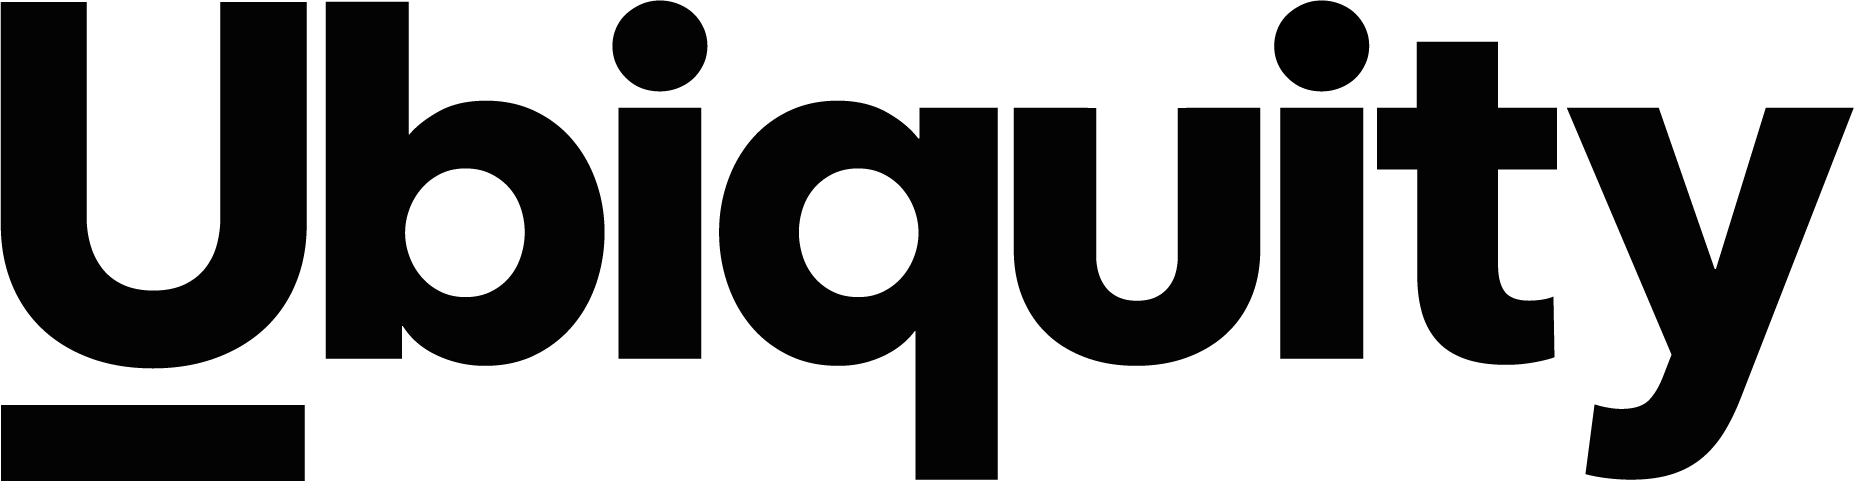 ubiquity-group-logo